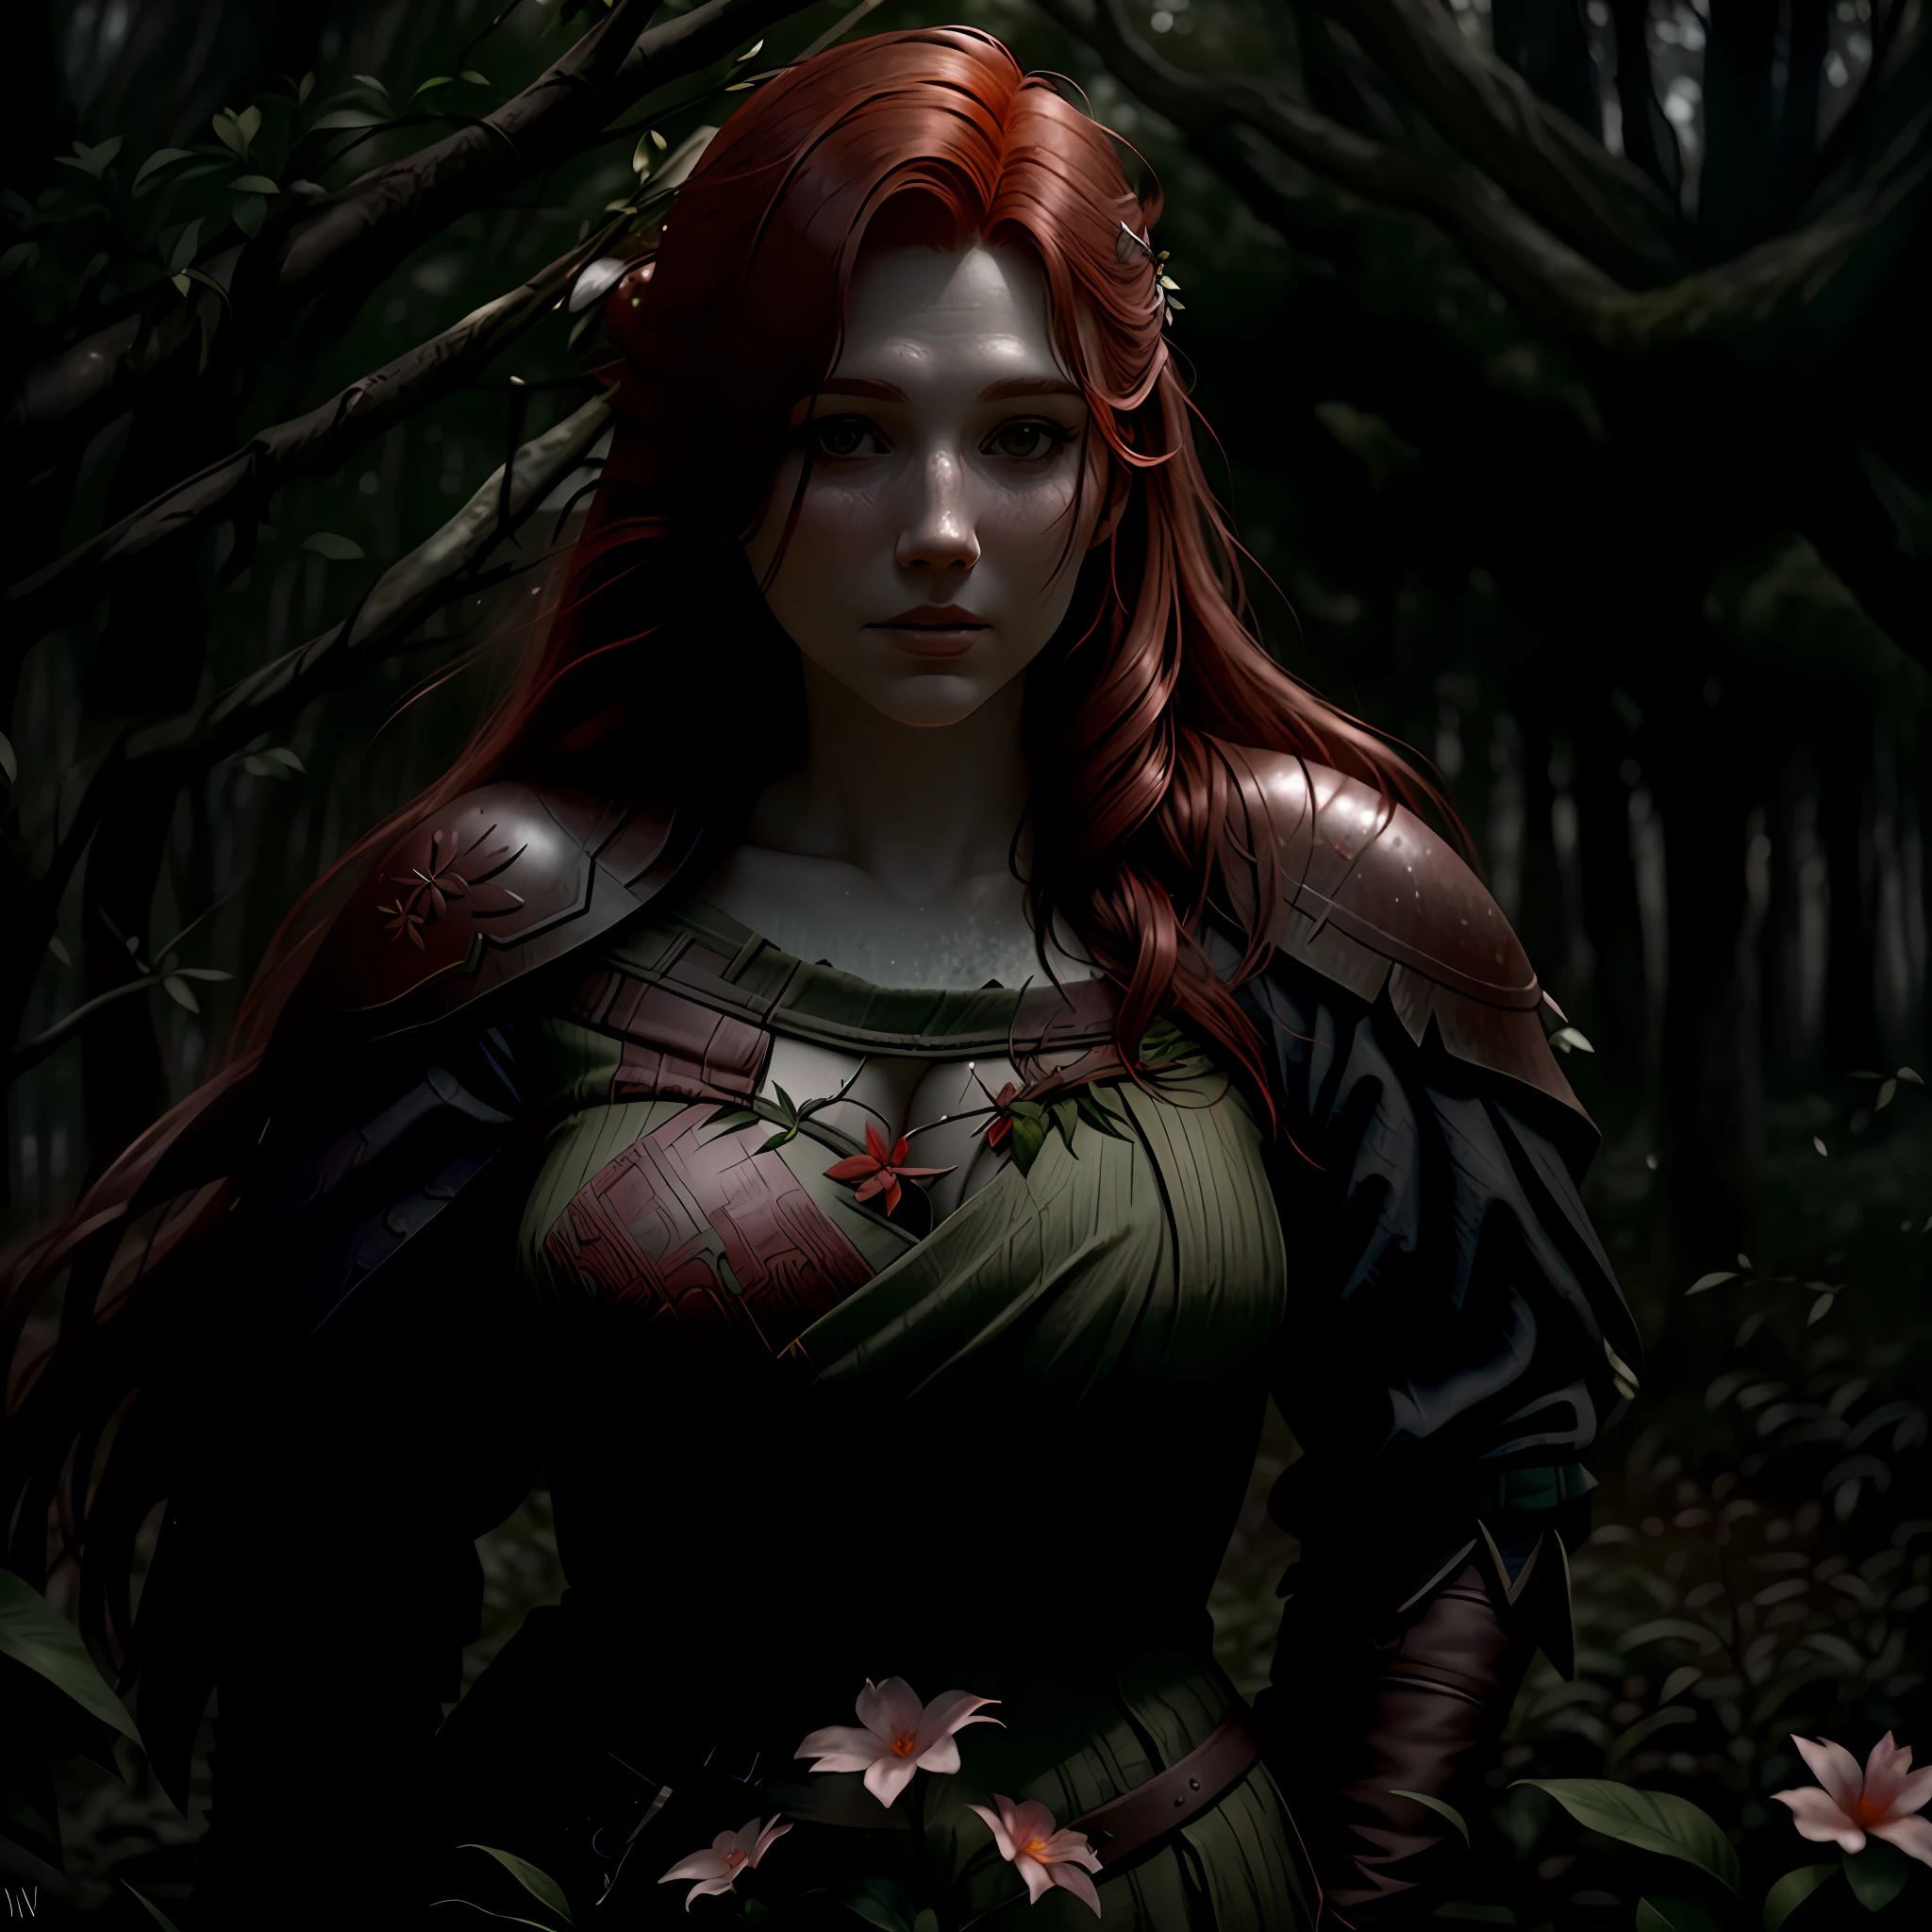 امرأة ذات شعر أحمر, منظور الشخص الثالث, فايكنغ, في العصور الوسطى, الروحاني, بيئة الغابات, النباتات والزهور الرطبة, الفروع, أفضل جودة, التركيز السينمائي, إضاءة مثالية, الطقس القاتم, بيئة واضحة